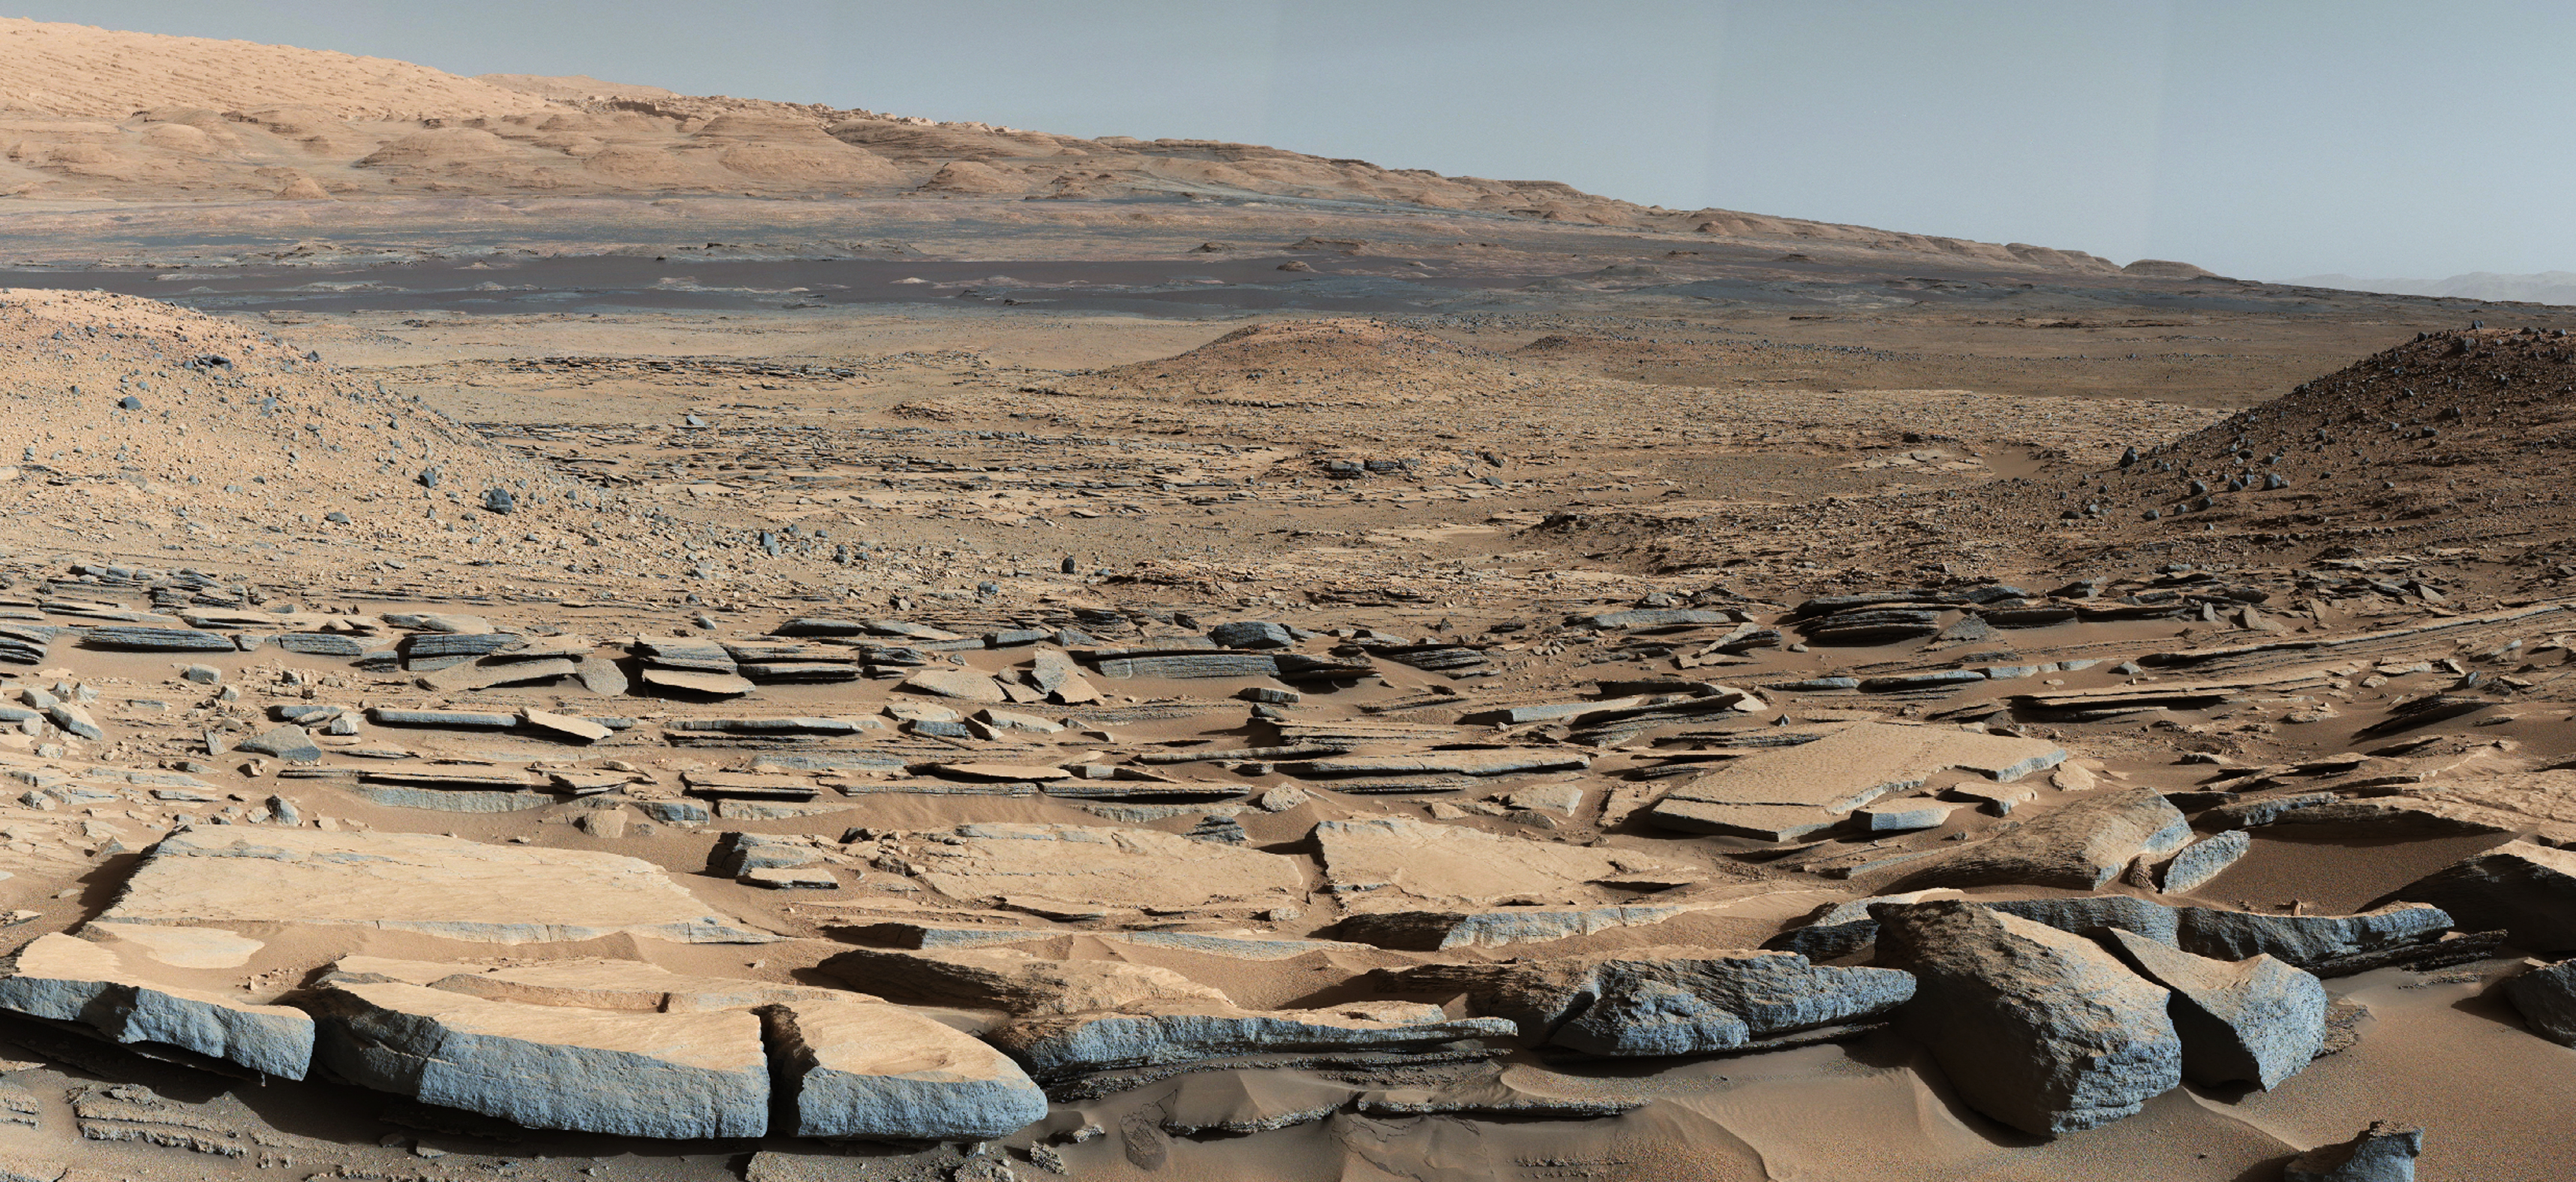 A Curiosity a Kimberley-képződményben készített fotójának előterében látható kőzetrétegek a Sharp-hegy felé való dőlése arra utal, hogy korábban egy vízzel teli medence volt a hegy helyén (2015. október 9.)